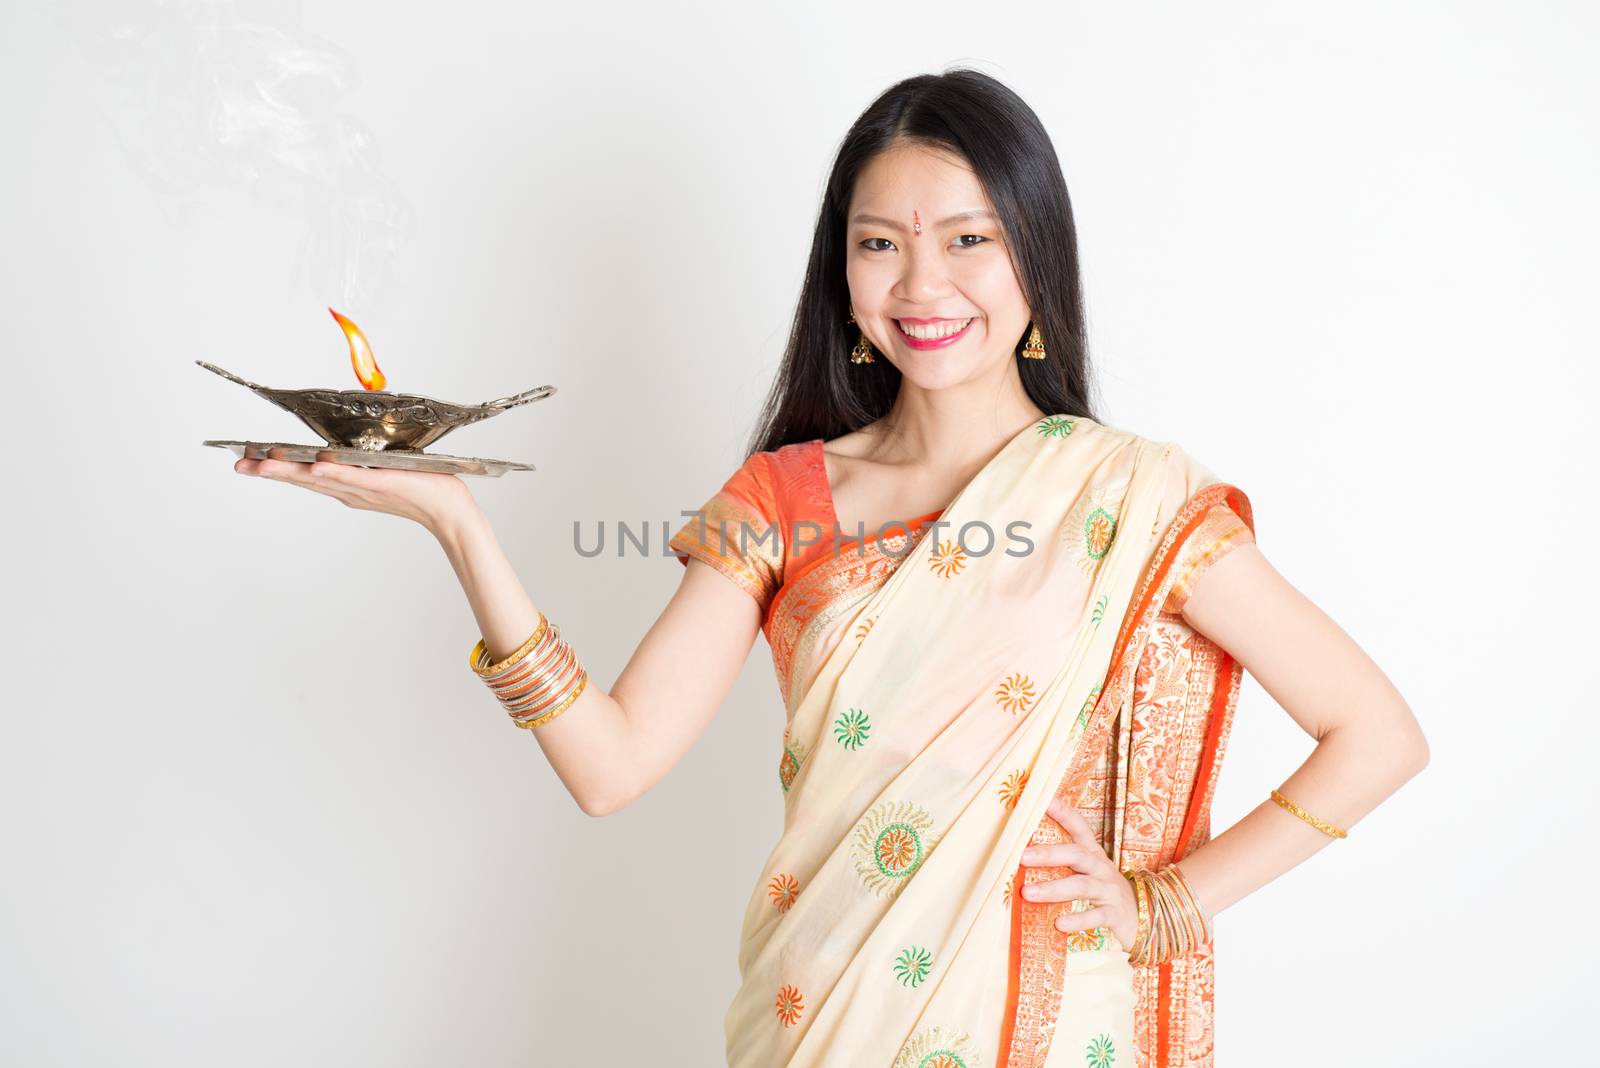 Girl with Indian sari dress holding oil lamp diya by szefei